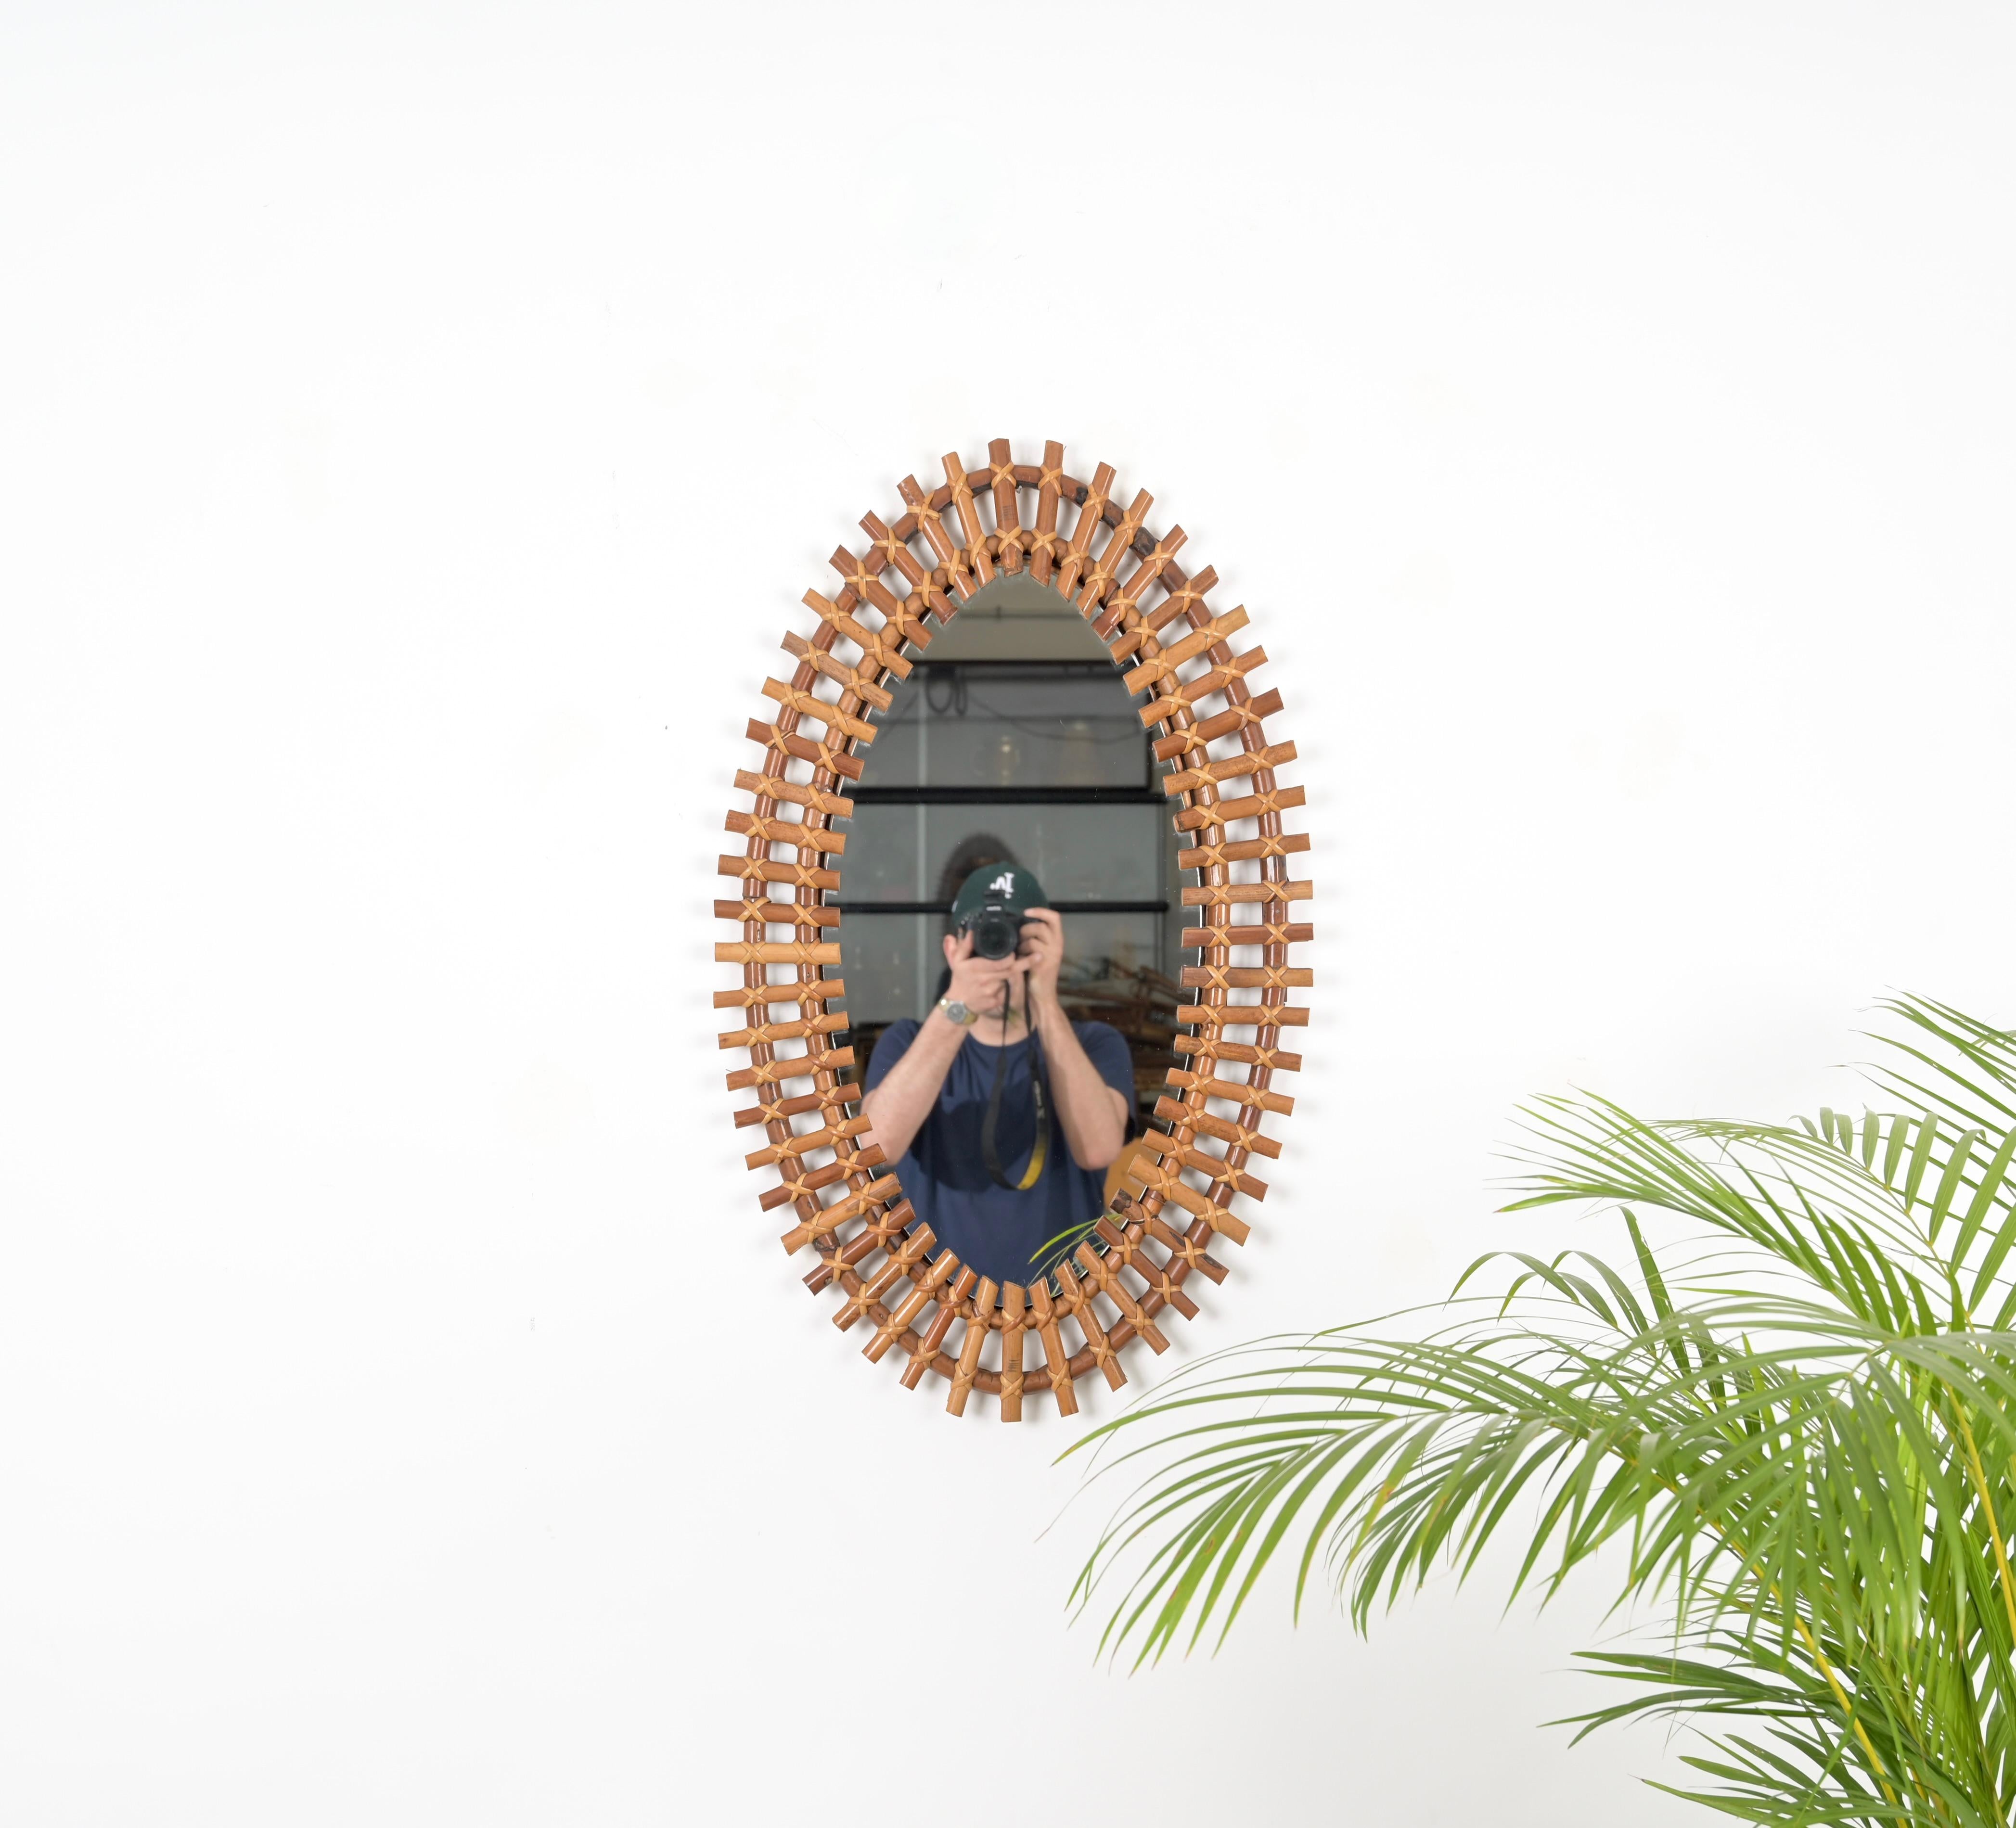 Dieser wunderschöne große ovale Wandspiegel aus Bambus, Rattan und Weide wurde in den 1960er Jahren in Italien hergestellt. 

Dieser reizende Spiegel hat ein atemberaubendes  Doppeltes Gestell aus gebogenem Rattan, durchzogen von kleinen